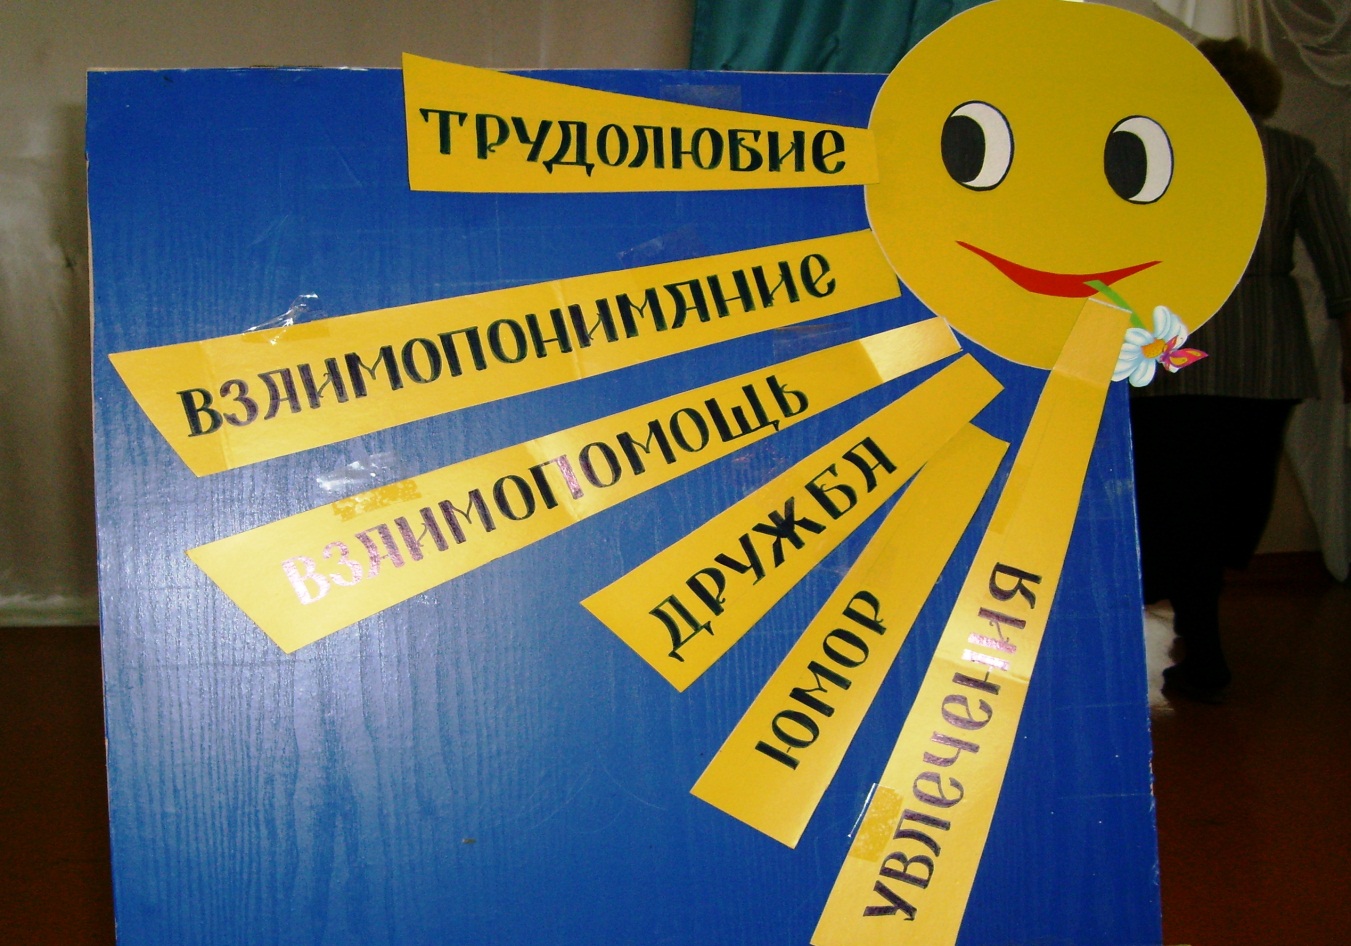 Конспект открытого занятия для воспитанников детского дома «Символ жизни - семья»